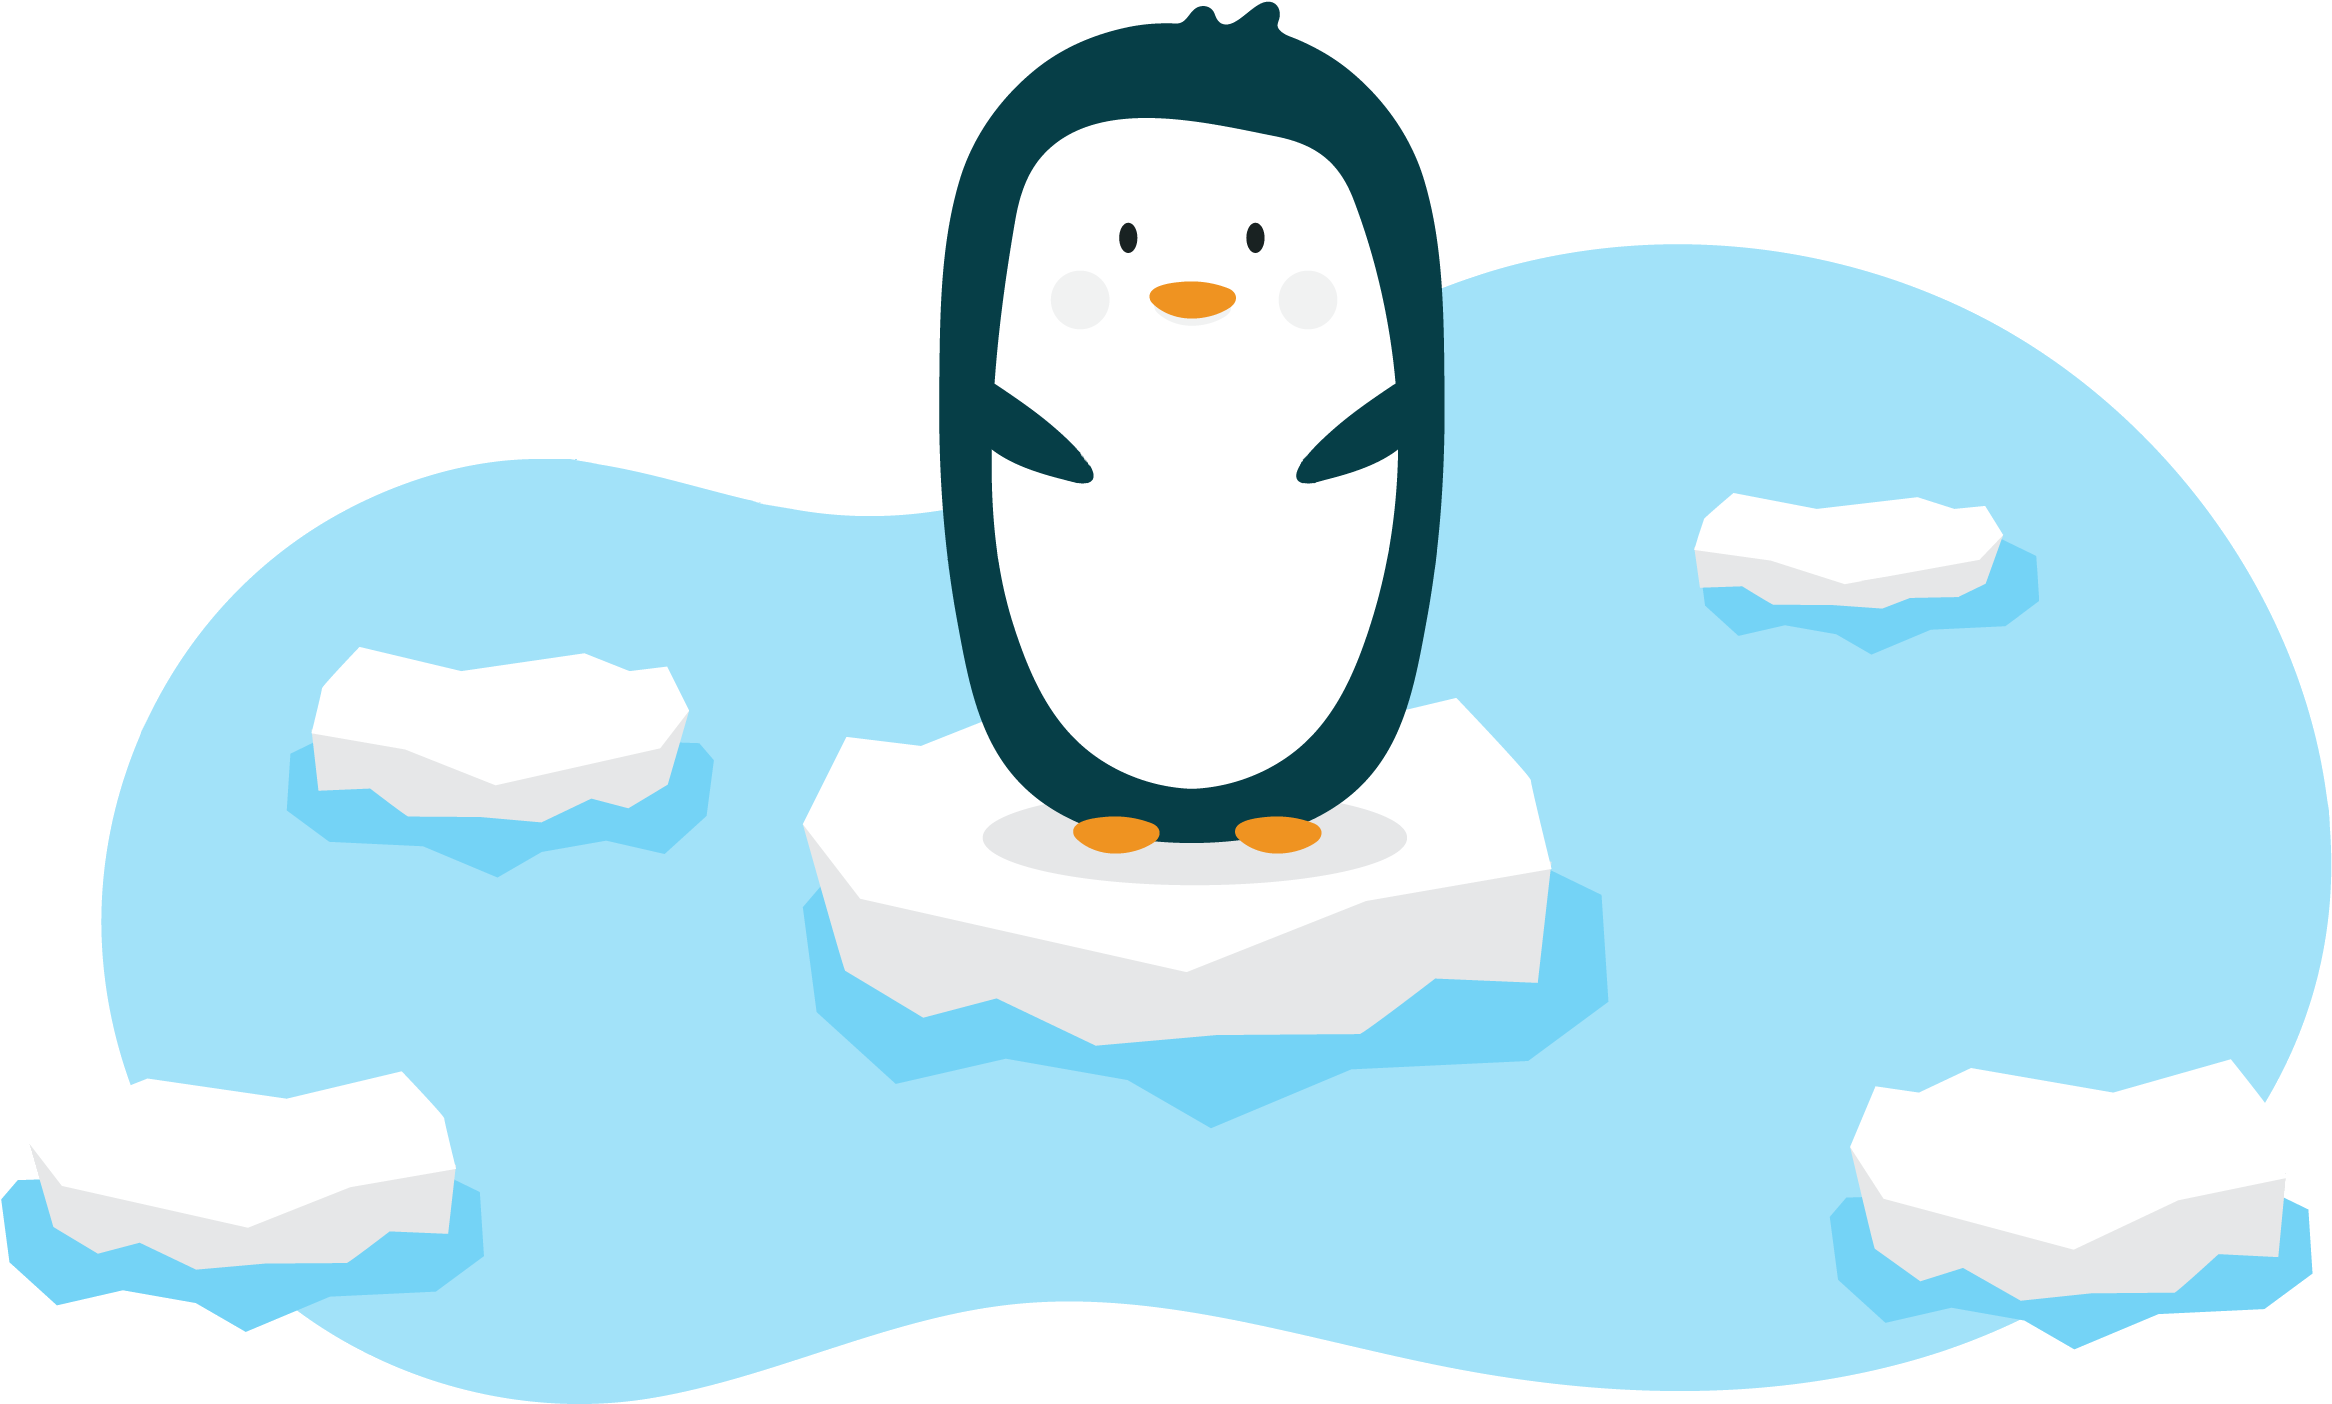 Cartoon Penguinon Iceberg